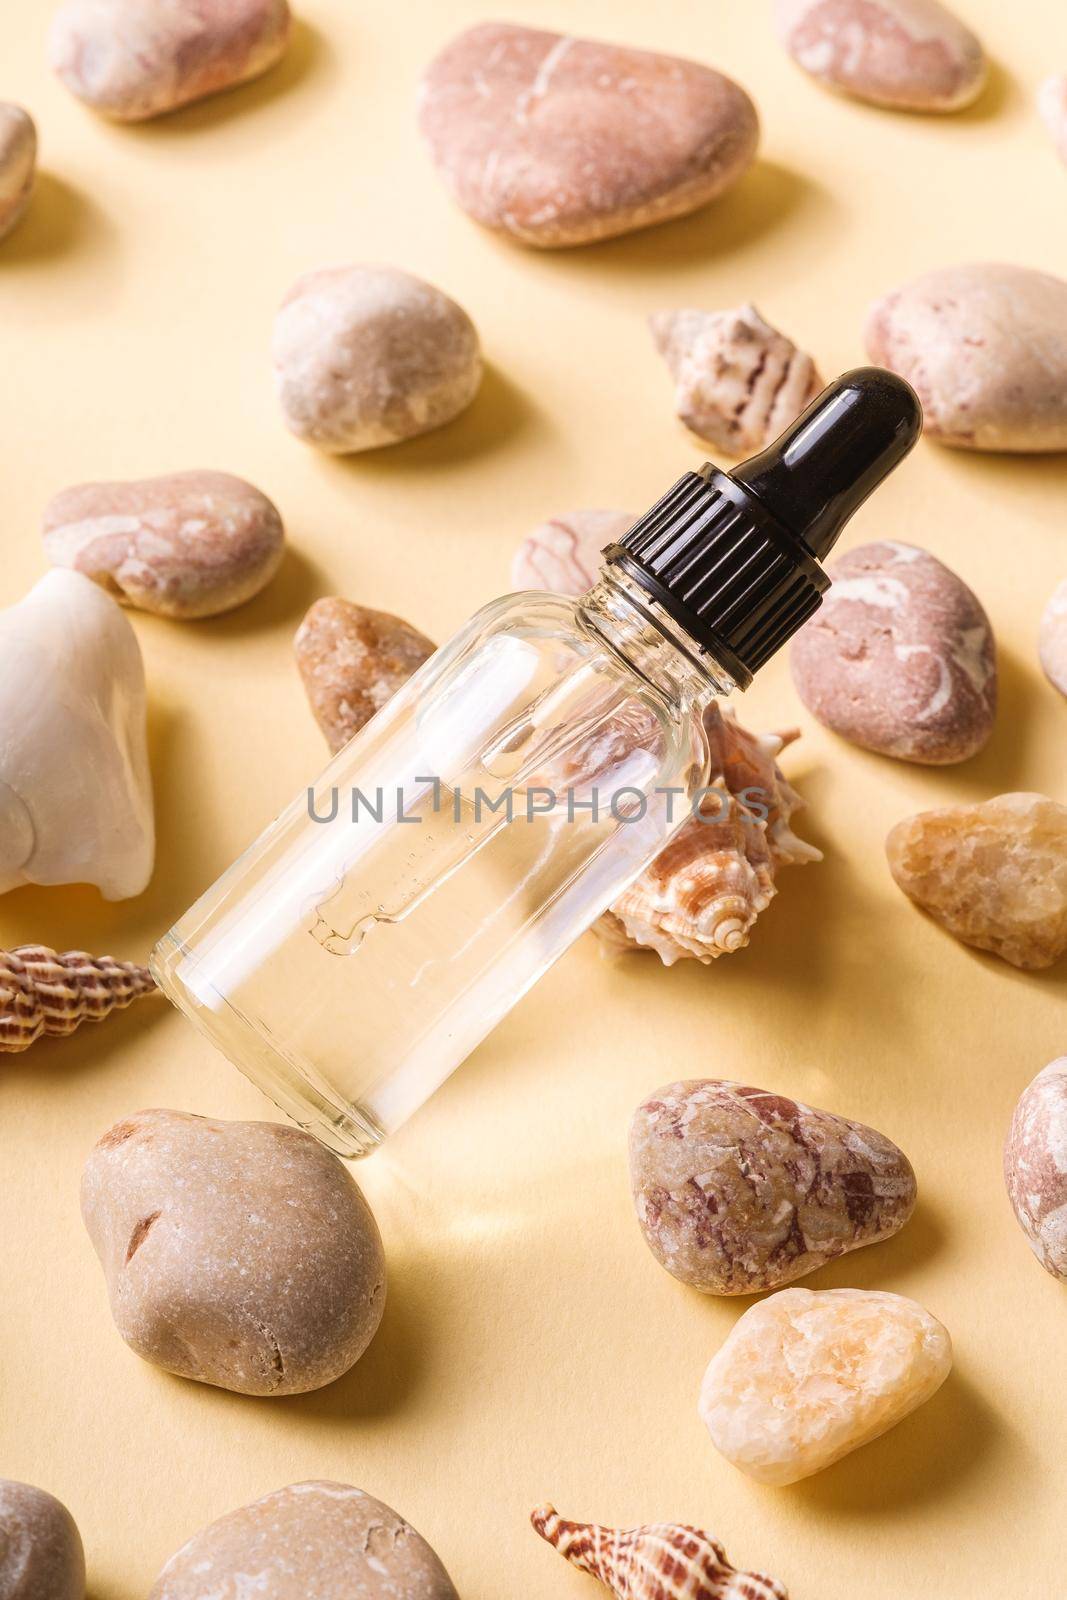 Skin care essence oil dropper in glass bottle on beige background